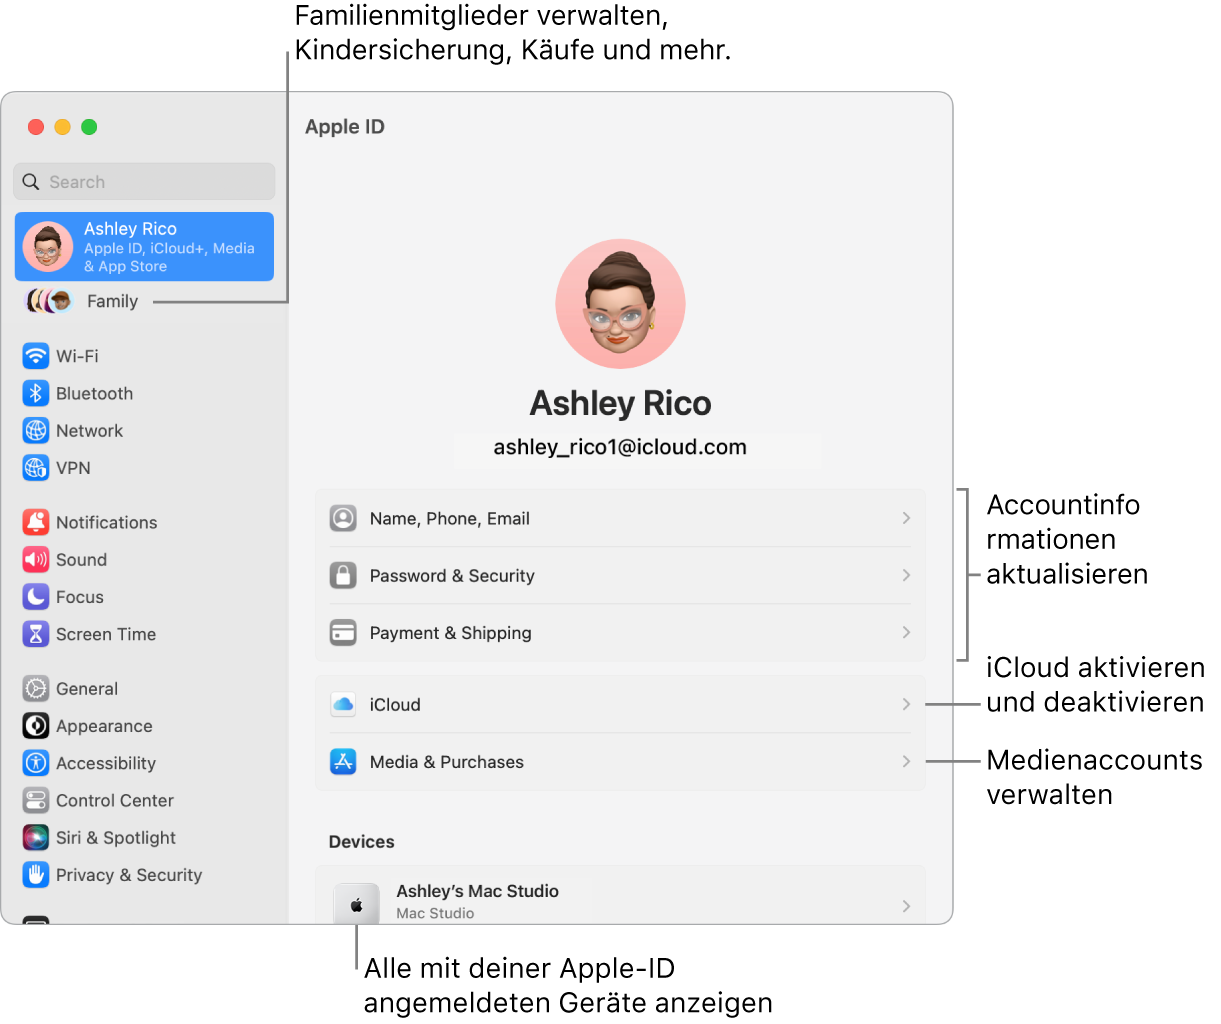 Die Einstellungen „Apple-ID“ in den Systemeinstellungen mit Beschriftungen zum Aktualisieren der Accountinformationen, Ein- bzw. Ausschalten von iCloud-Funktionen, Verwalten von Medienaccounts und für die Funktion „Familie", um Familienmitglieder, Kindersicherung, Käufe und mehr zu verwalten.